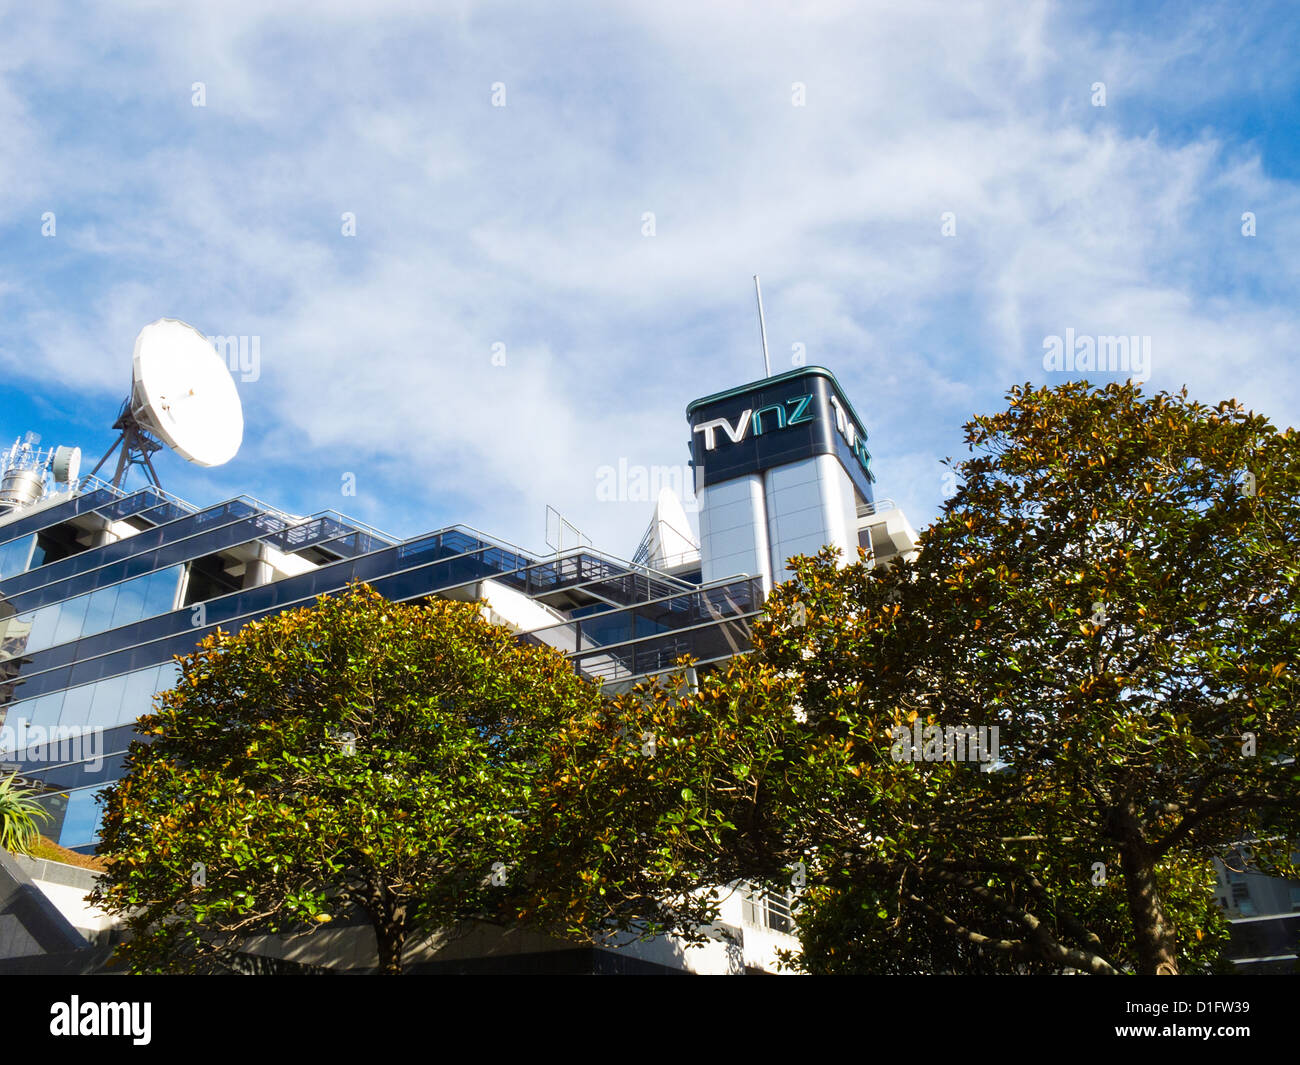 Une vue de la TVNZ bâtiment. Plat national NZ television studios et bureaux, Auckland, île du Nord, en Nouvelle-Zélande. Banque D'Images